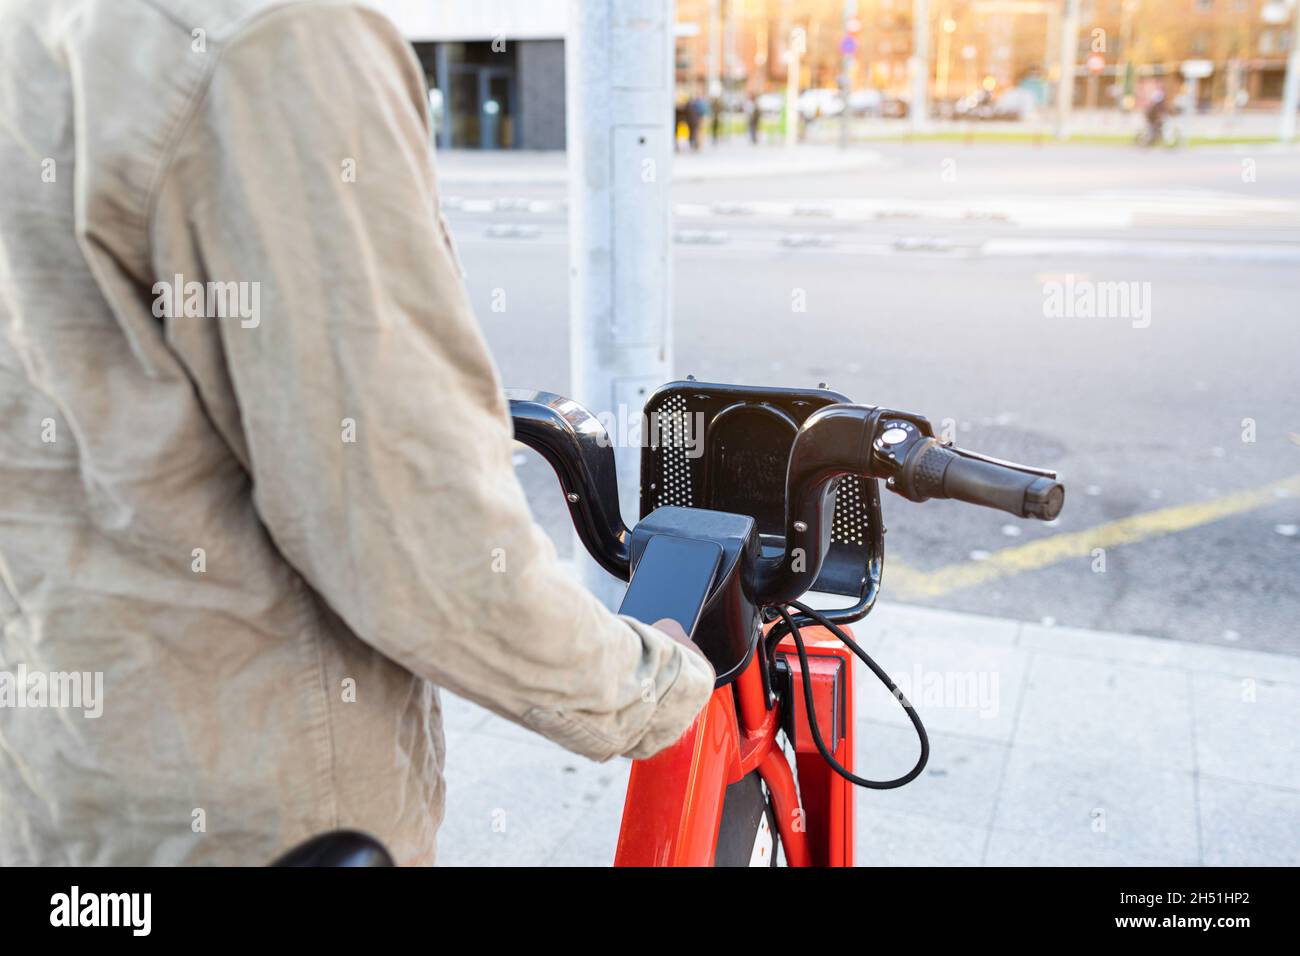 Persona irreconocible que toma una bicicleta en una plataforma de alquiler de bicicletas. Utilice su smartphone. Foto de stock